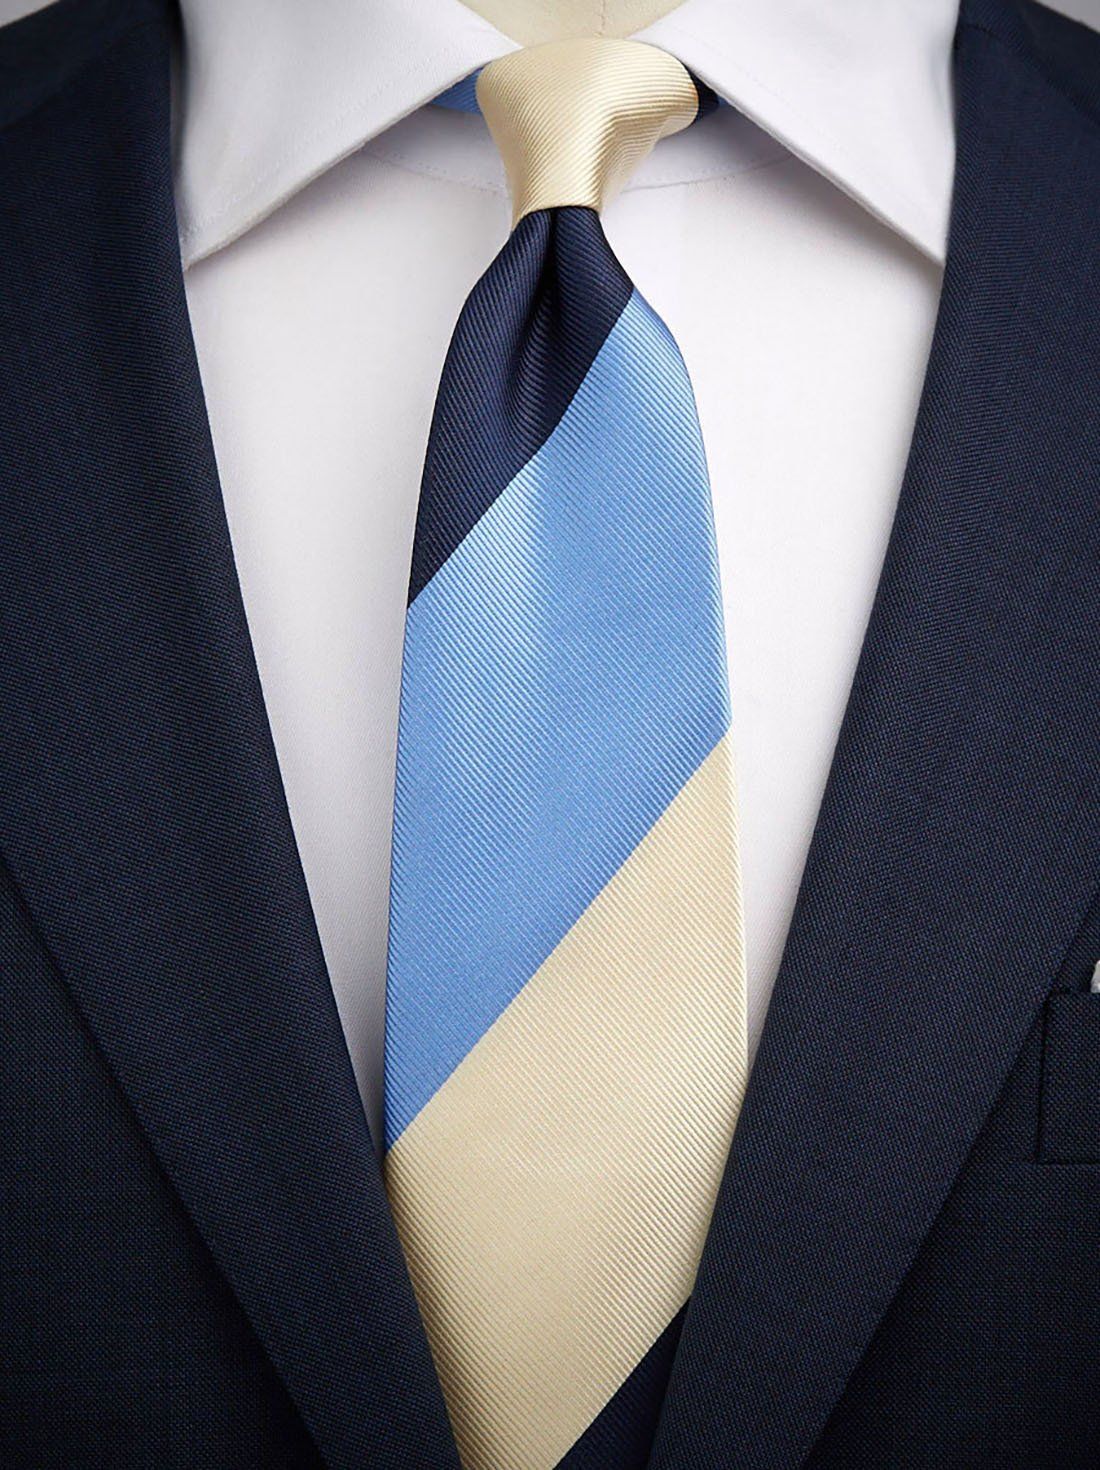 Blau Weiße Gestreifte Krawatte